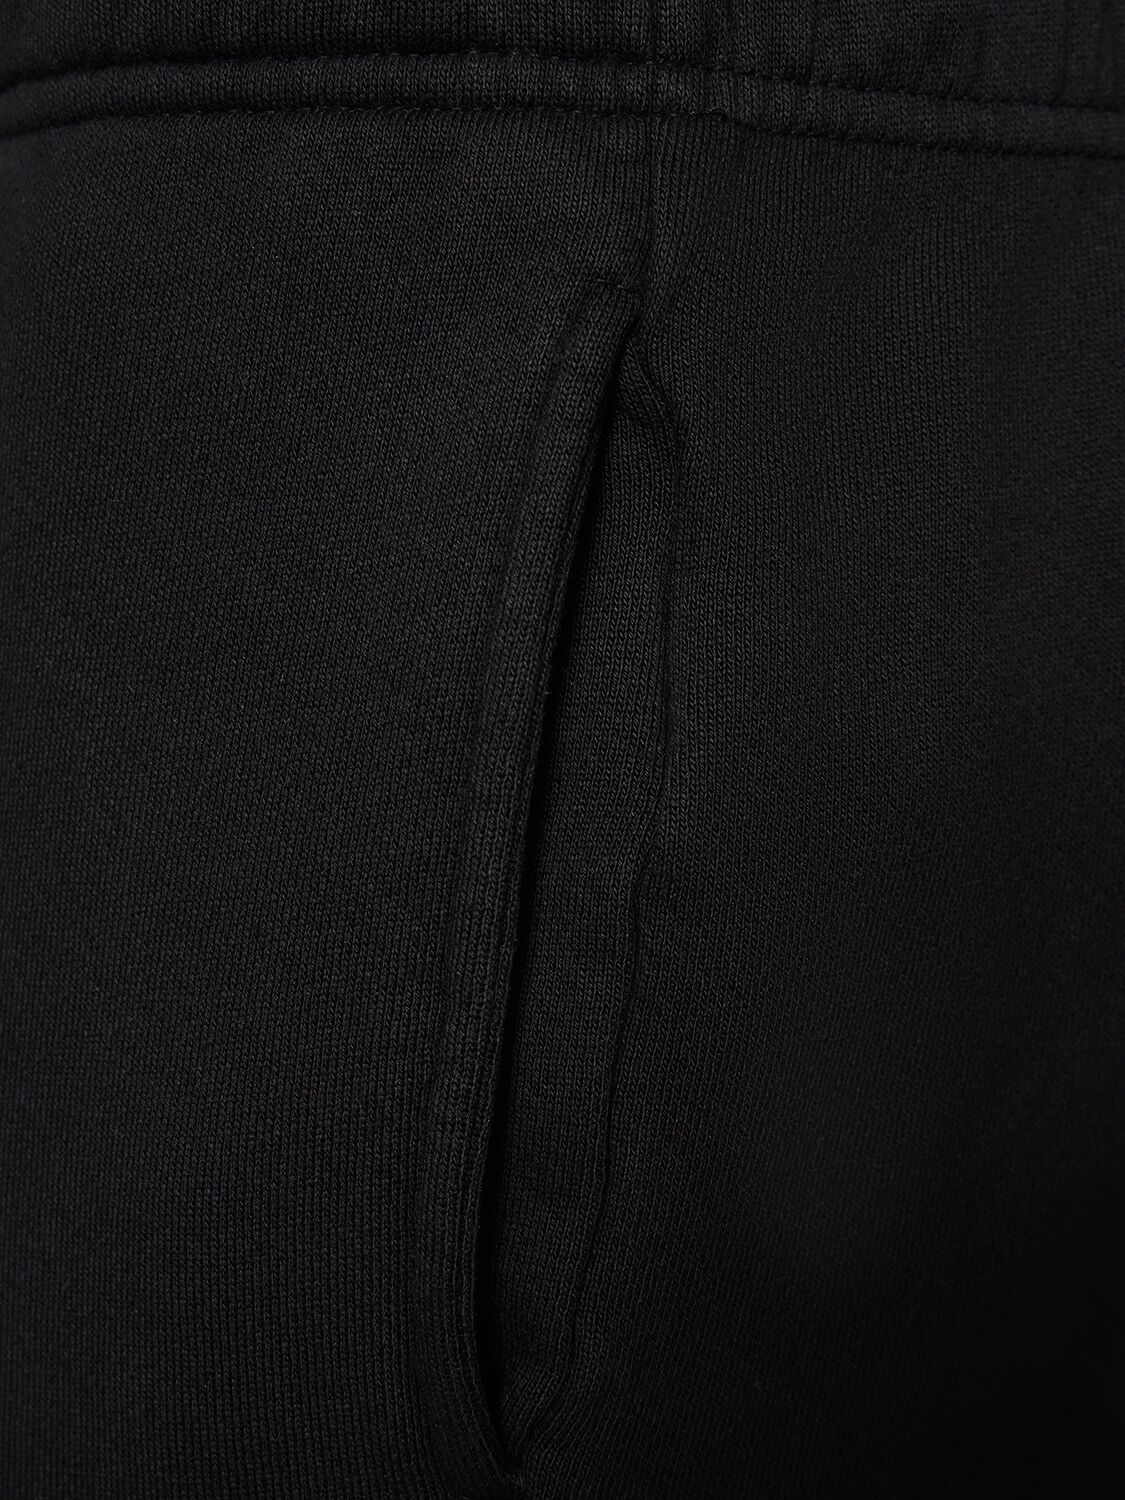 Shop Les Tien Classic Cotton Sweatpants In Black